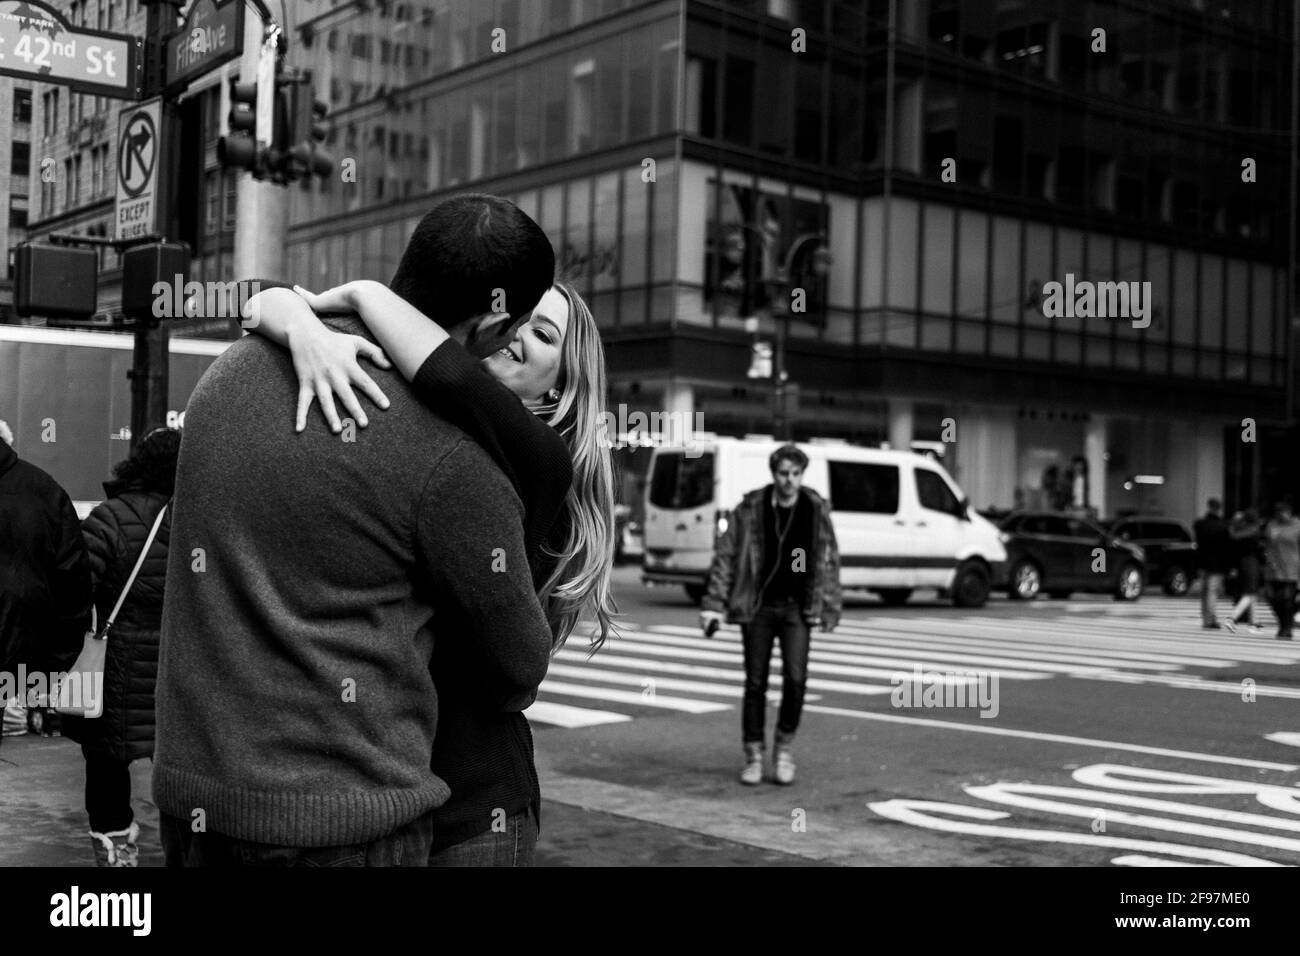 Photographie de rue à Manhattan, New York, États-Unis Banque D'Images